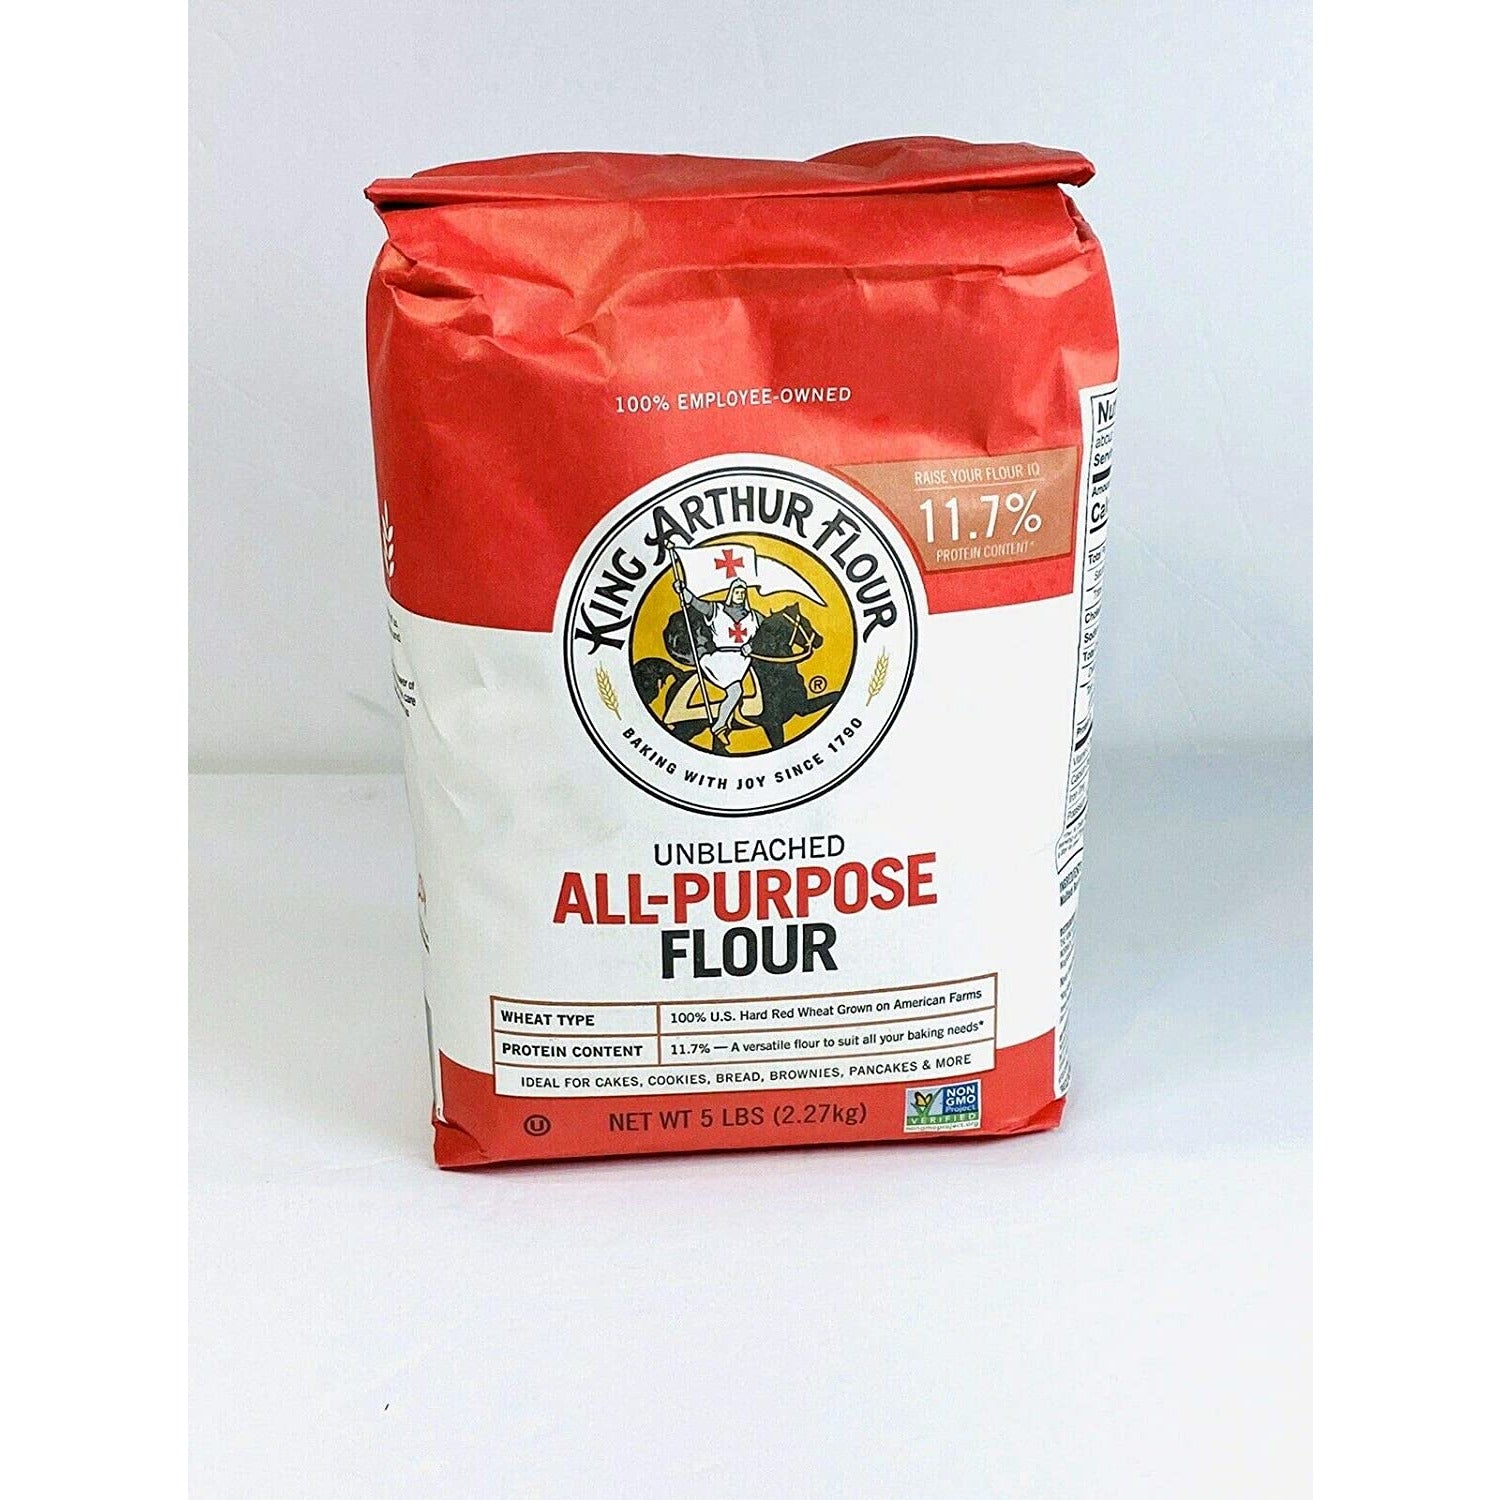 King Arthur All Purpose Flour 5 Lb (2.27 Kg) Unbleached